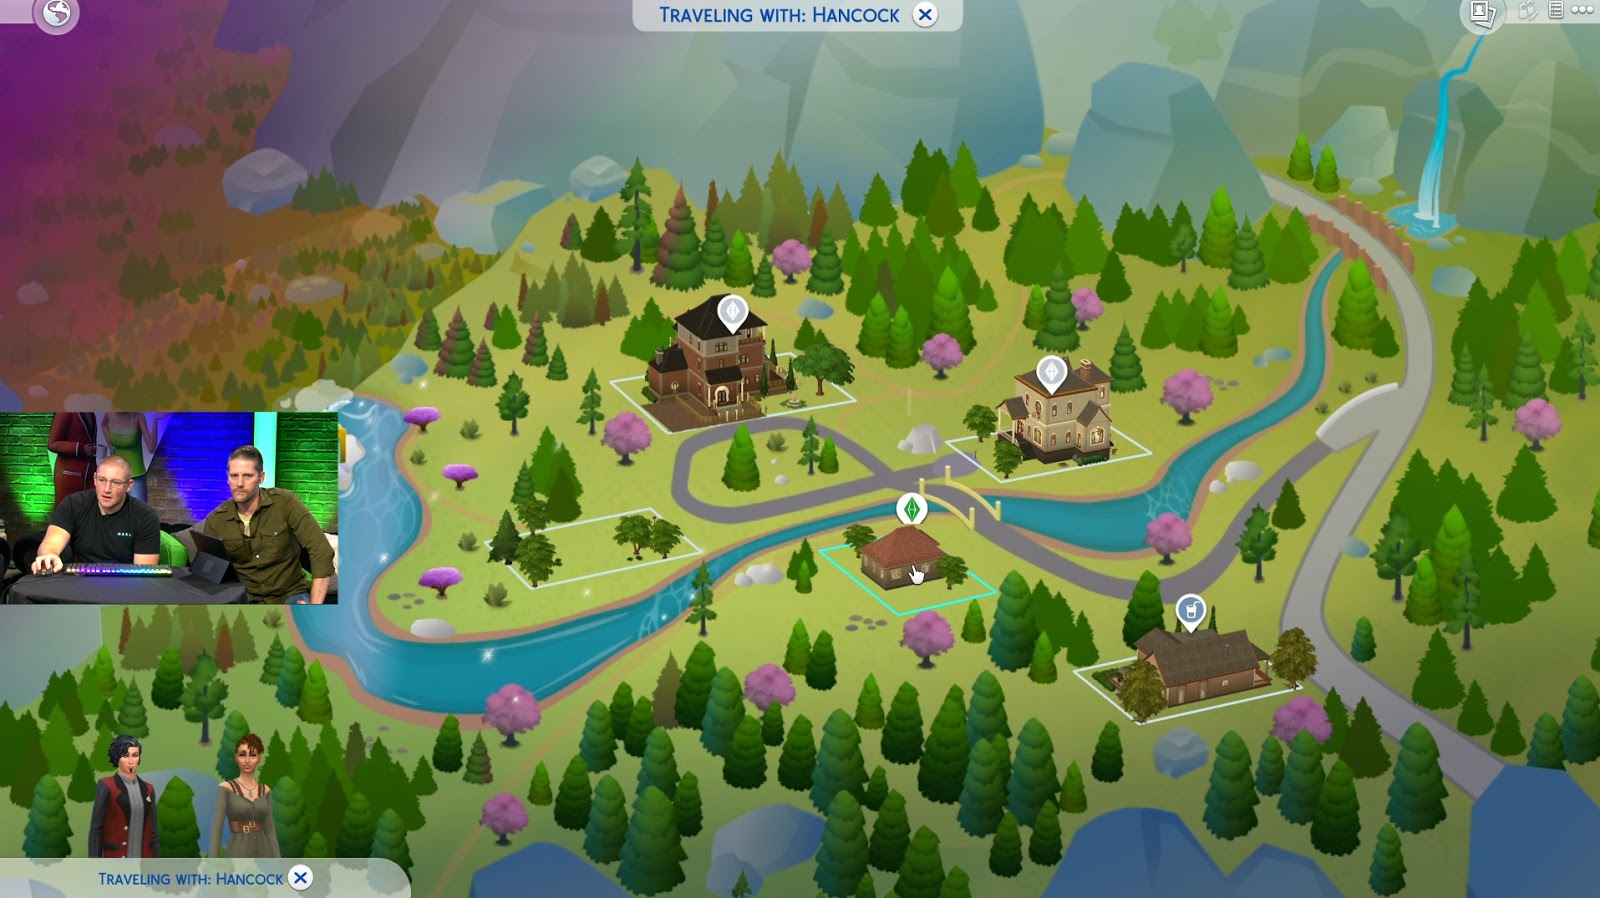 The Sims 4 Reino da Magia: Informações da live dos produtores